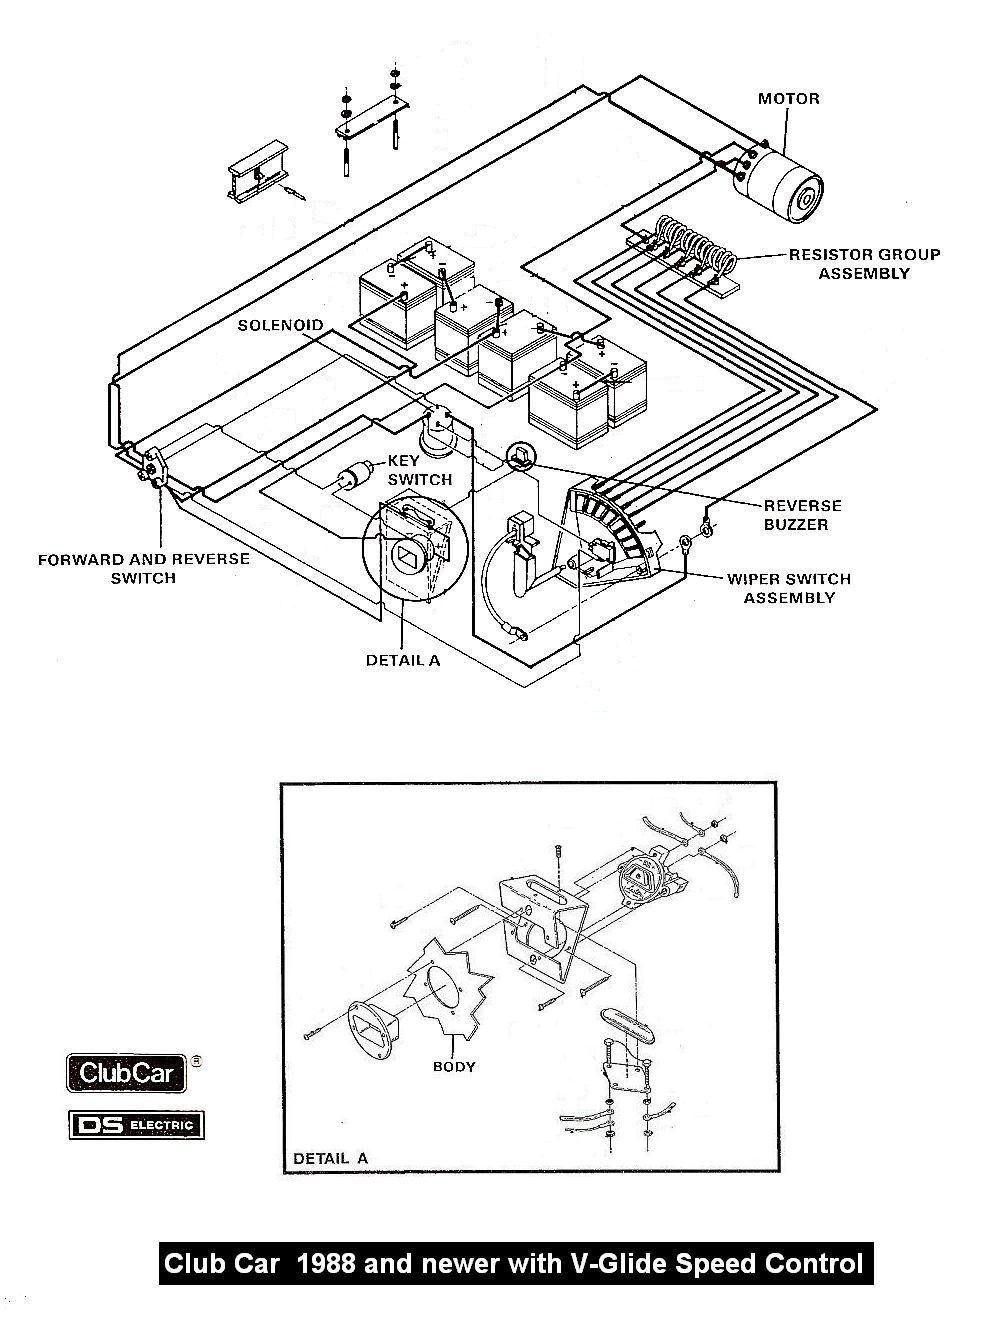 Club Car Wiring Diagram Fresh Club Car Wiring Diagram & Starter Generator Wiring Diagram Golf Cart